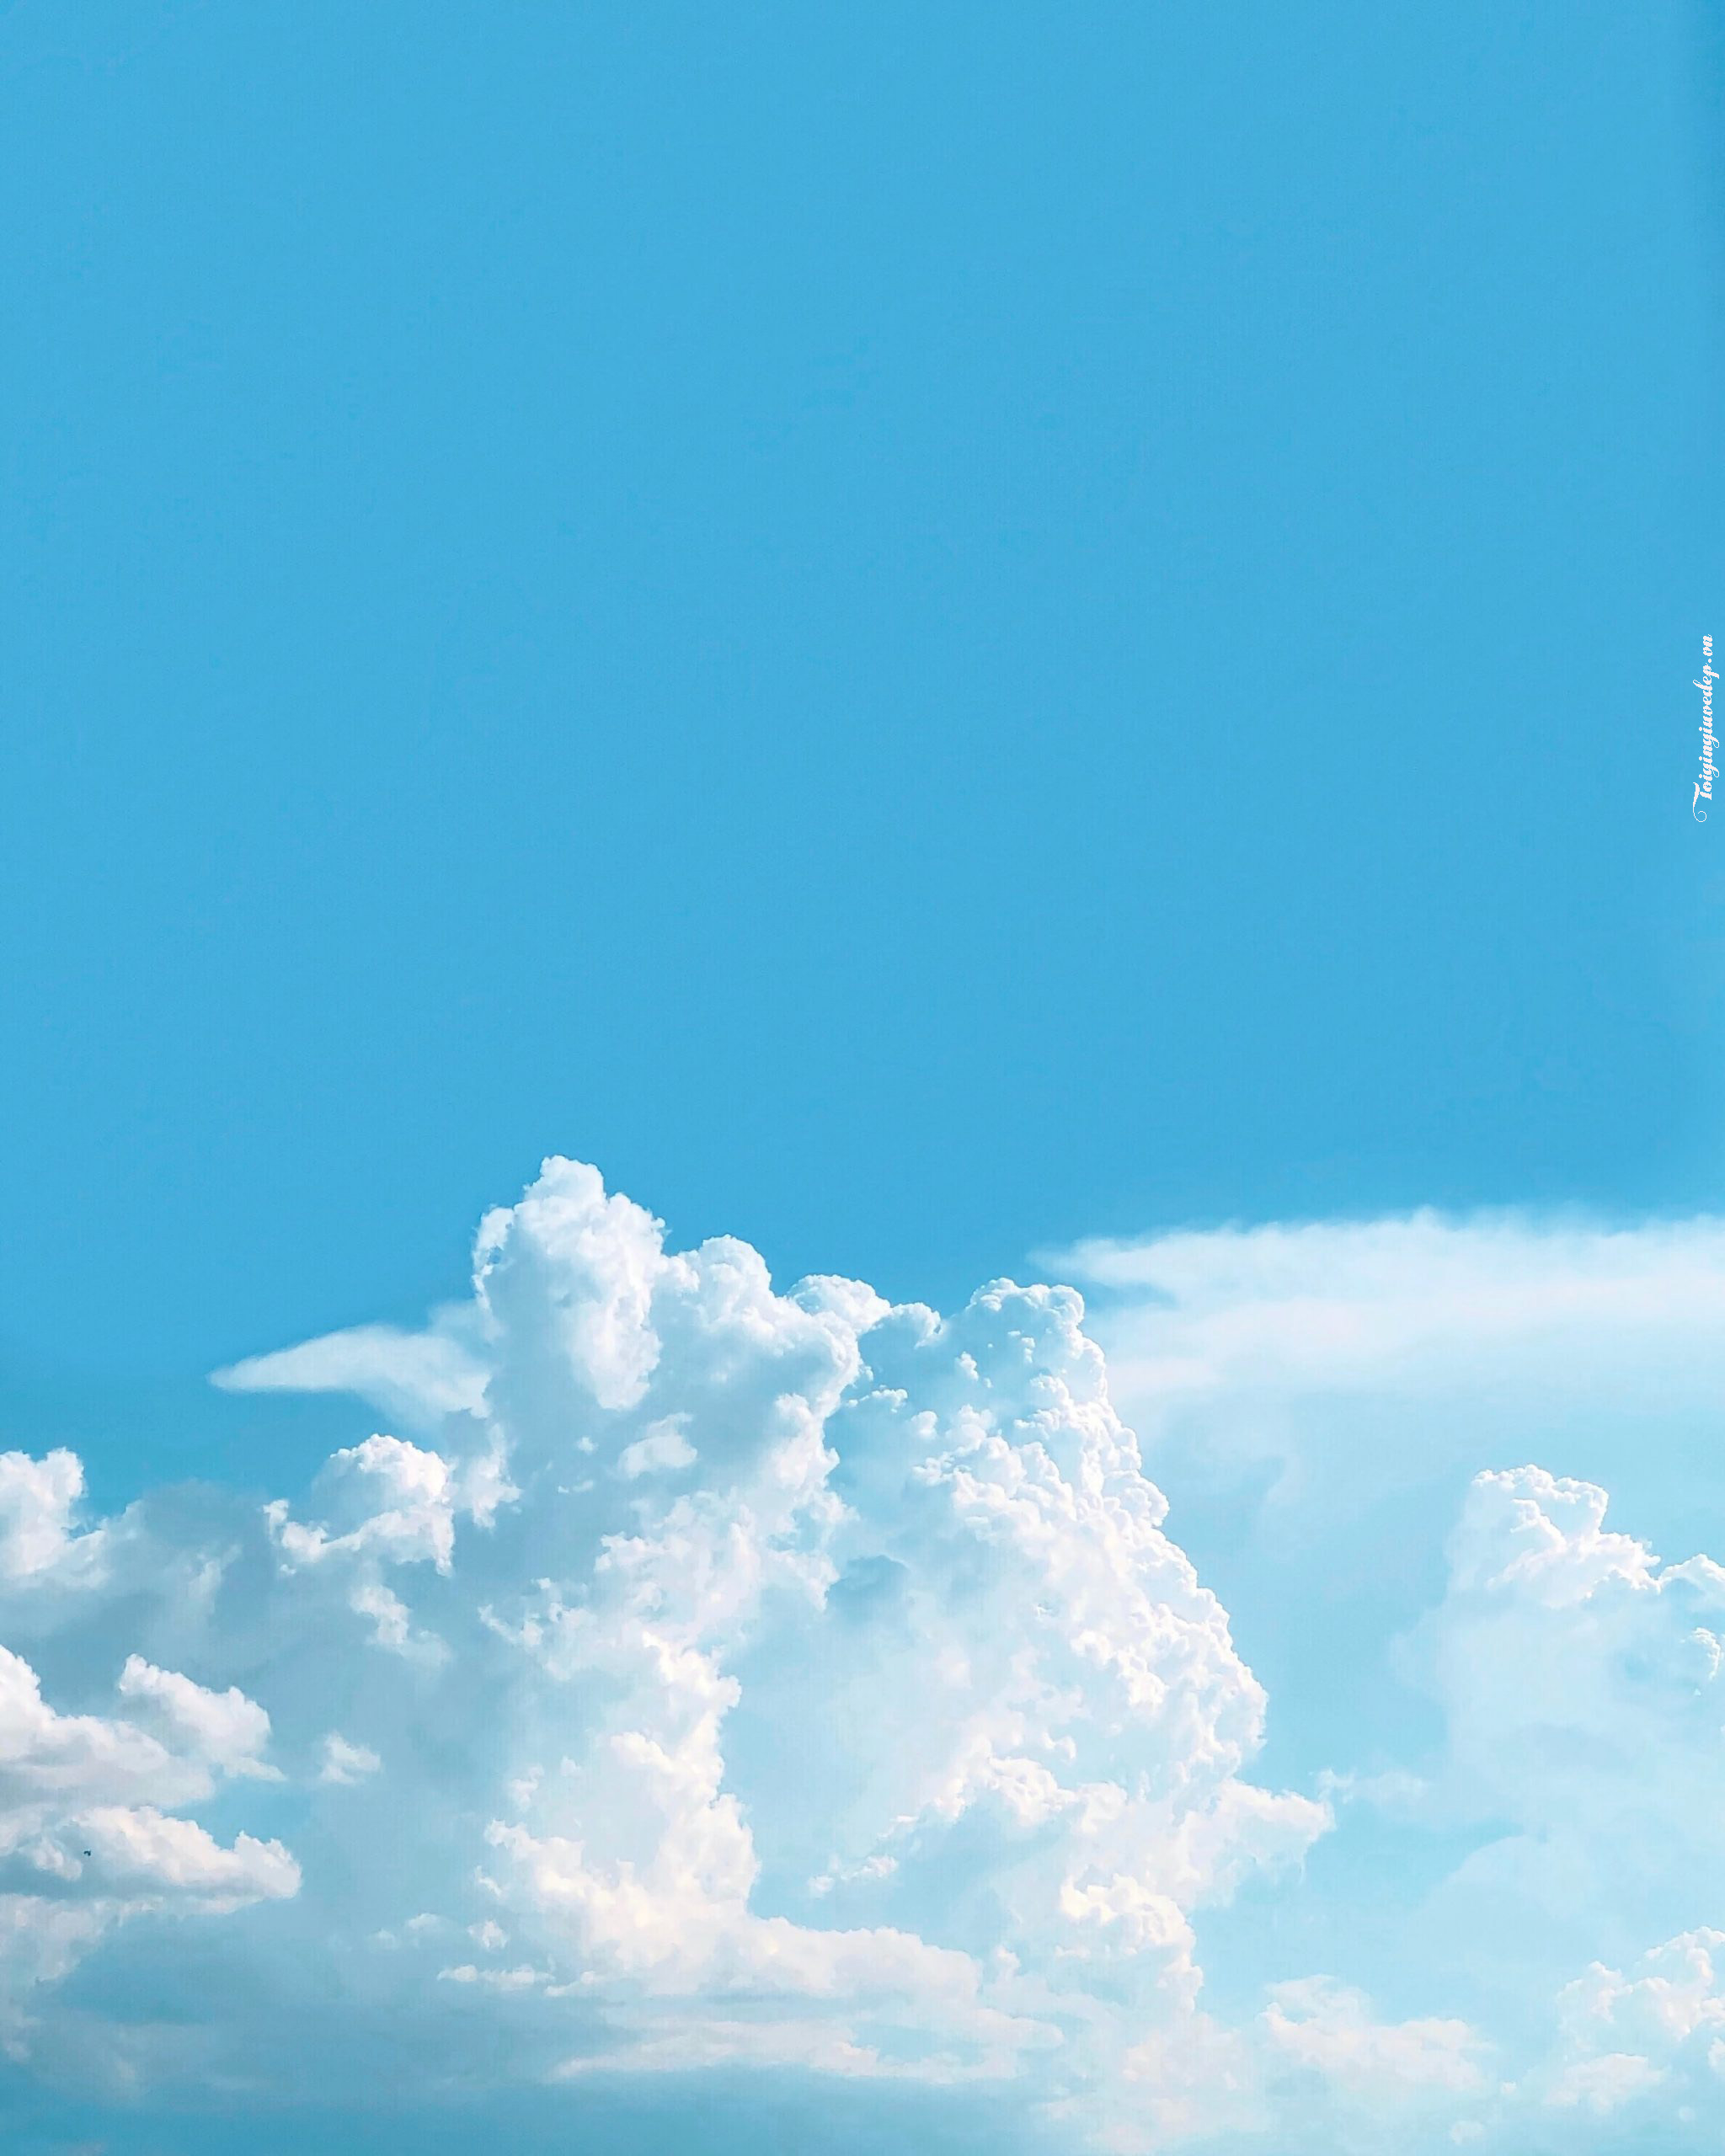 Ảnh cute  Avt cute bầu trời cho bạn nào thích màu xanh   Nhật ký nghệ  thuật Kỳ ảo Bầu trời